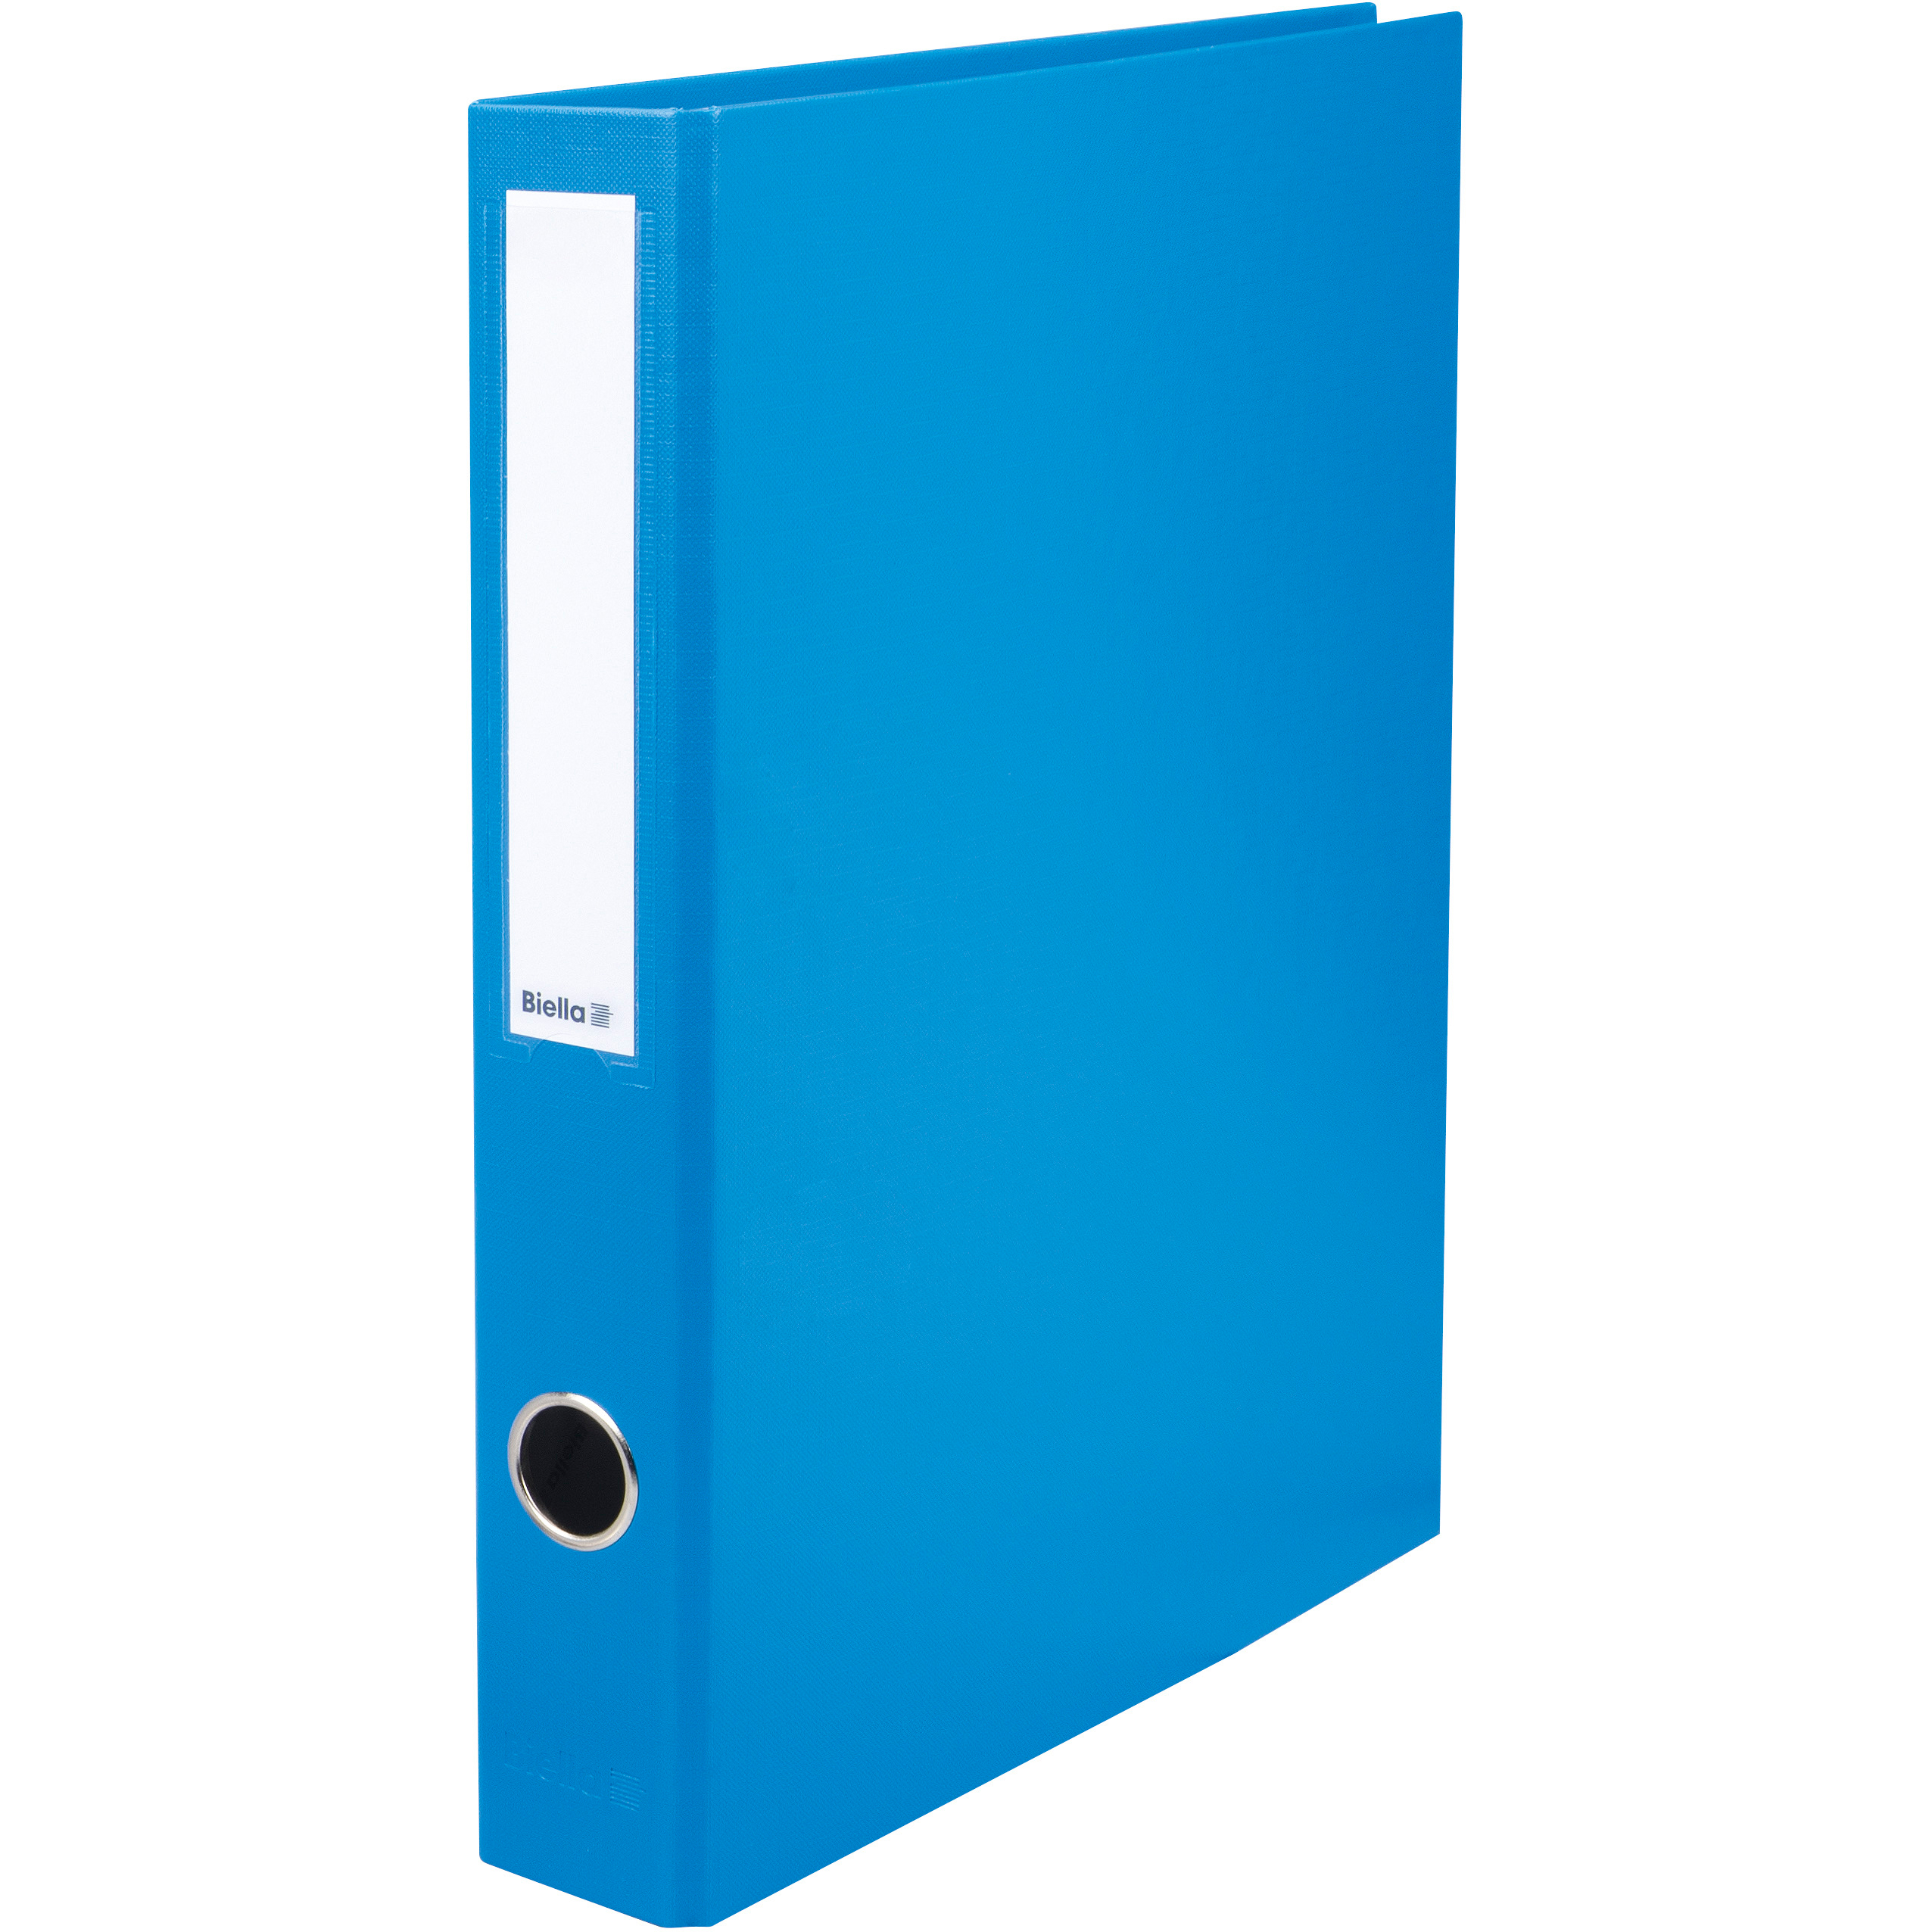 BIELLA Livre prés. Dinor-Quatro 4cm 12644405U bleu, 4-anneaux A4 bleu, 4-anneaux A4